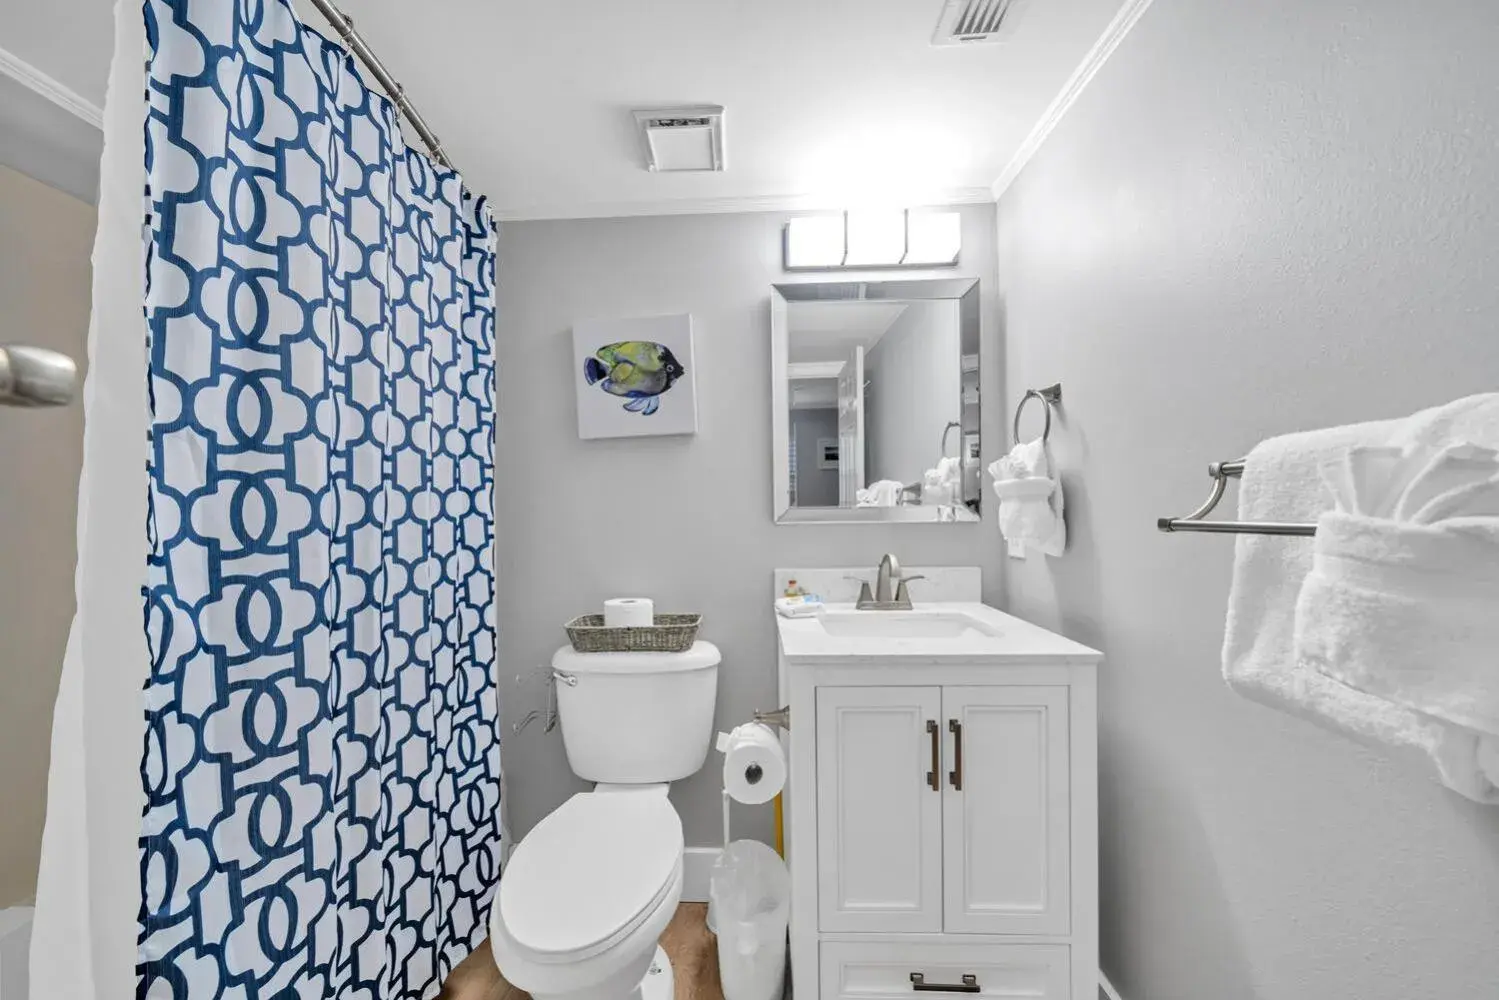 Toilet, Bathroom in Pelican Beach Resort by ResortQuest